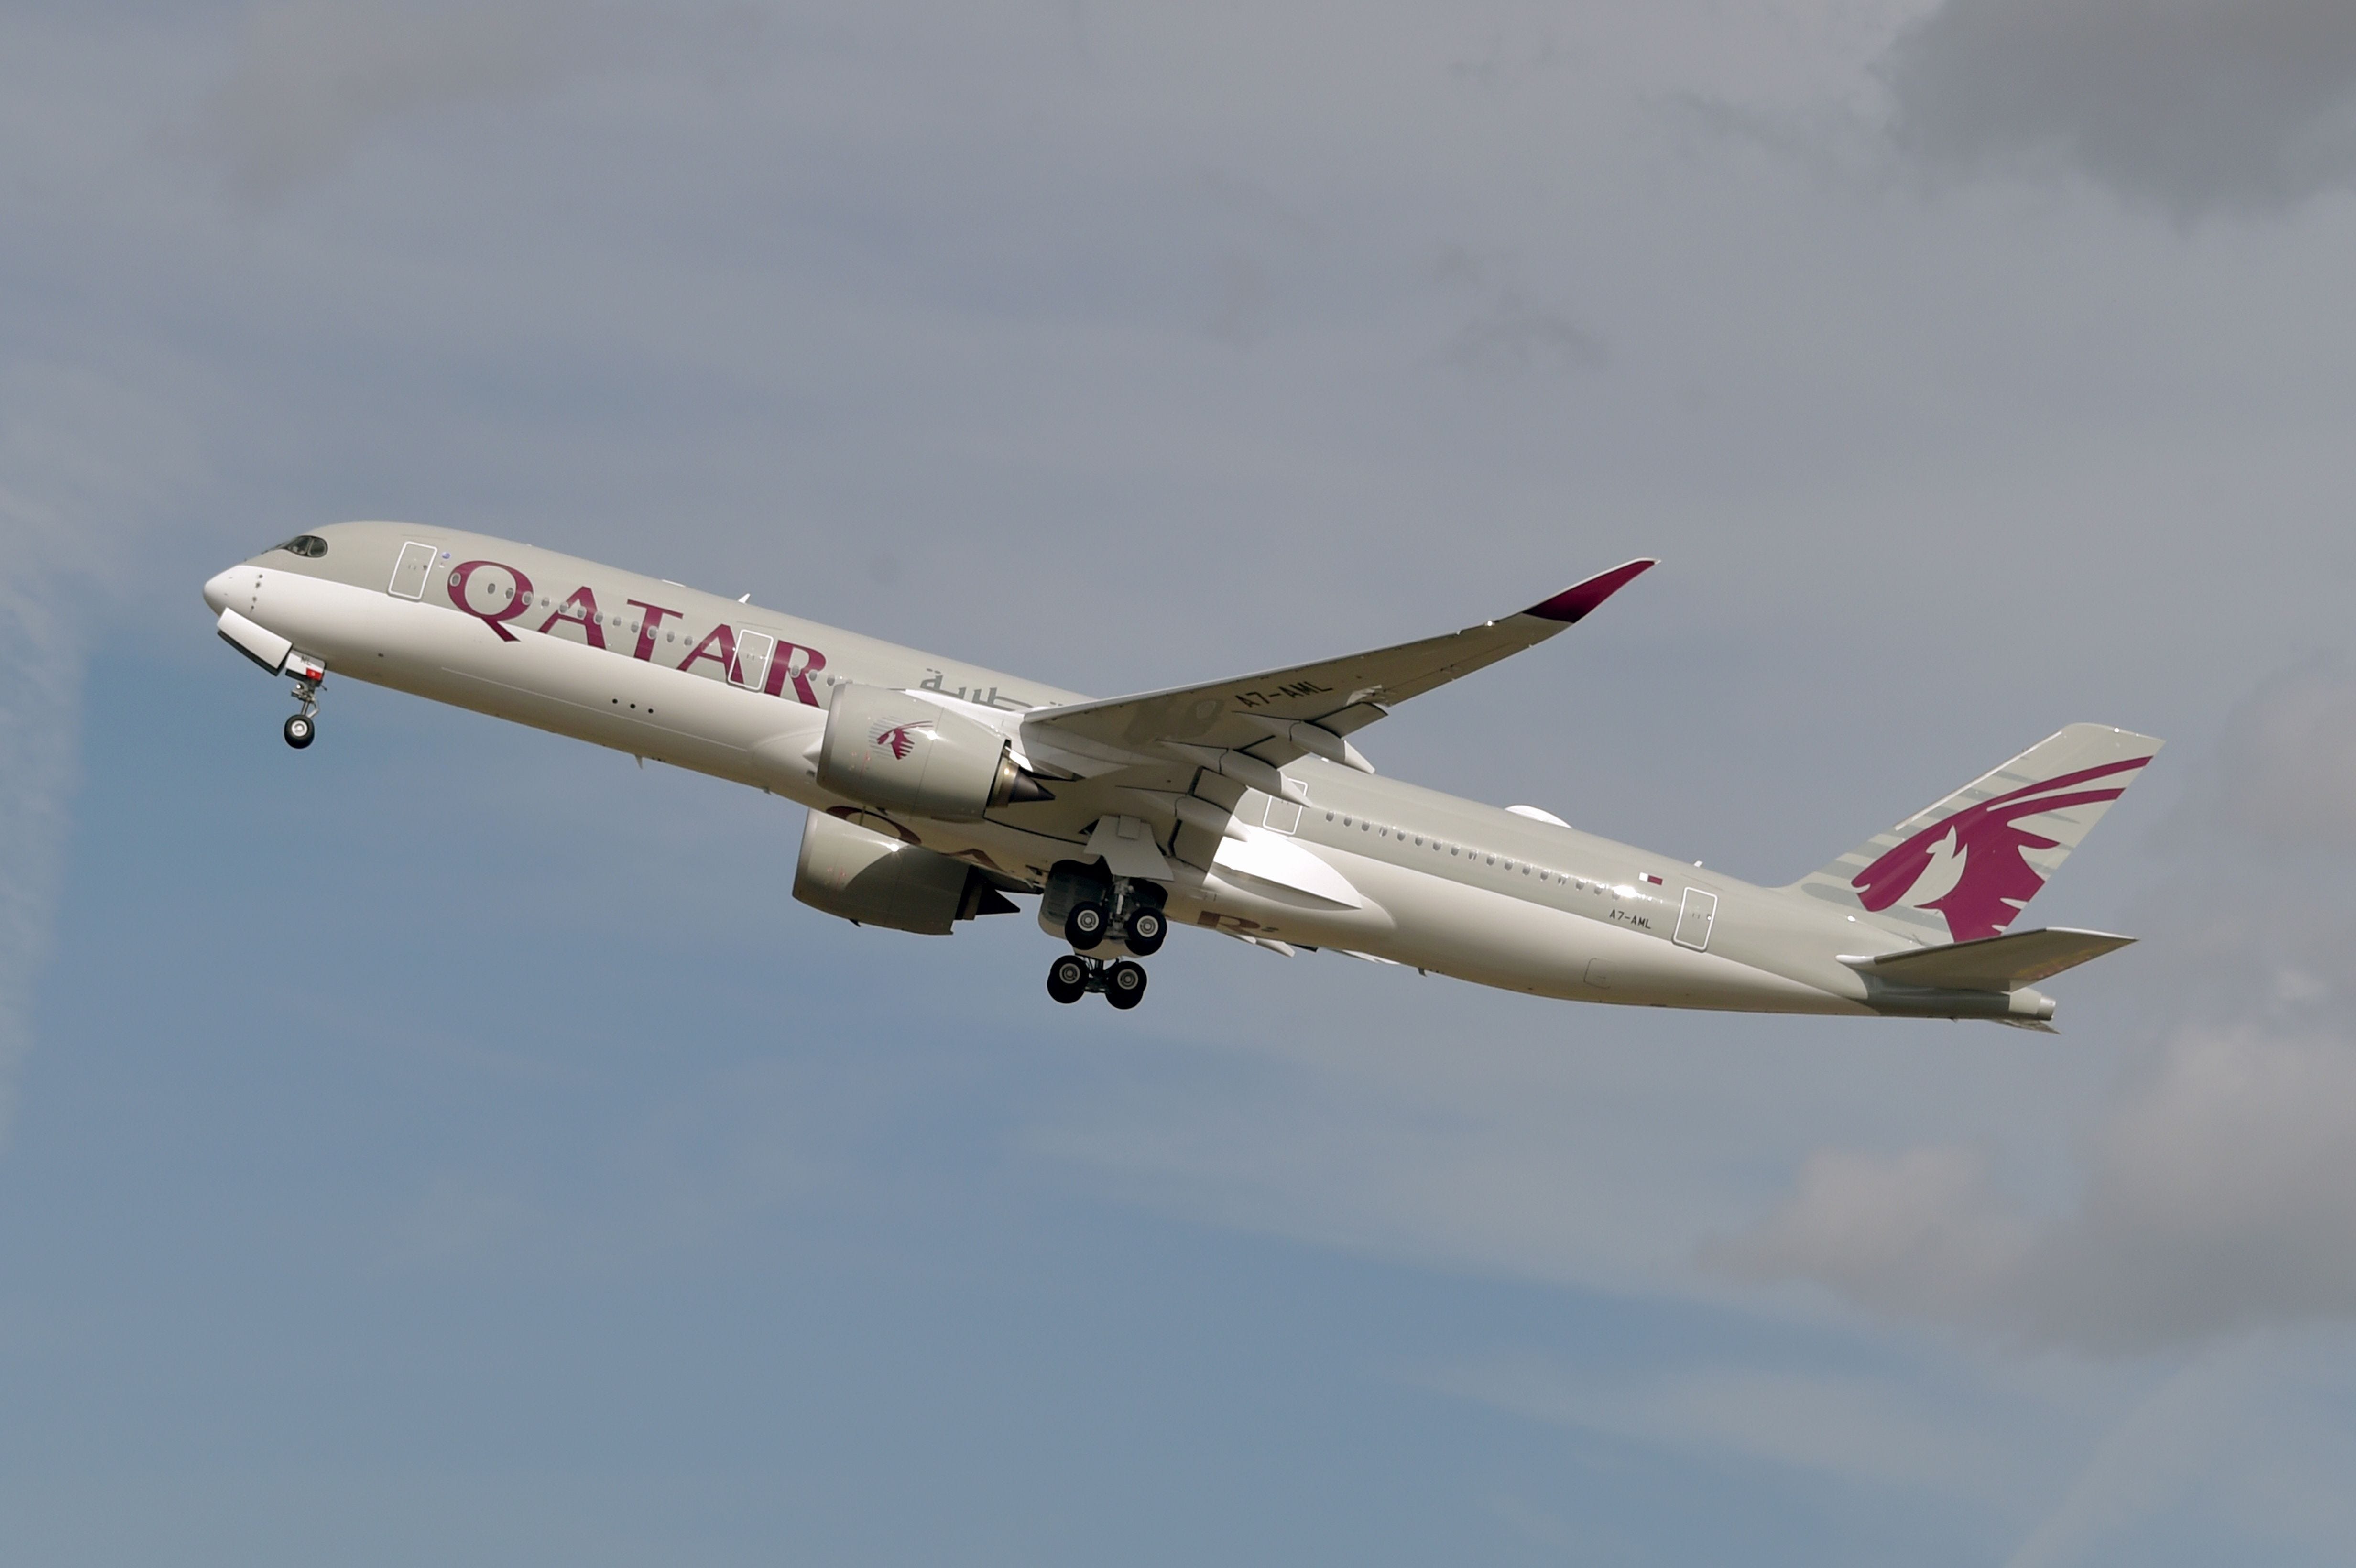   Ein Airbus A350 der Qatar Airways nach dem Start vom Flughafen Toulouse-Blagnac